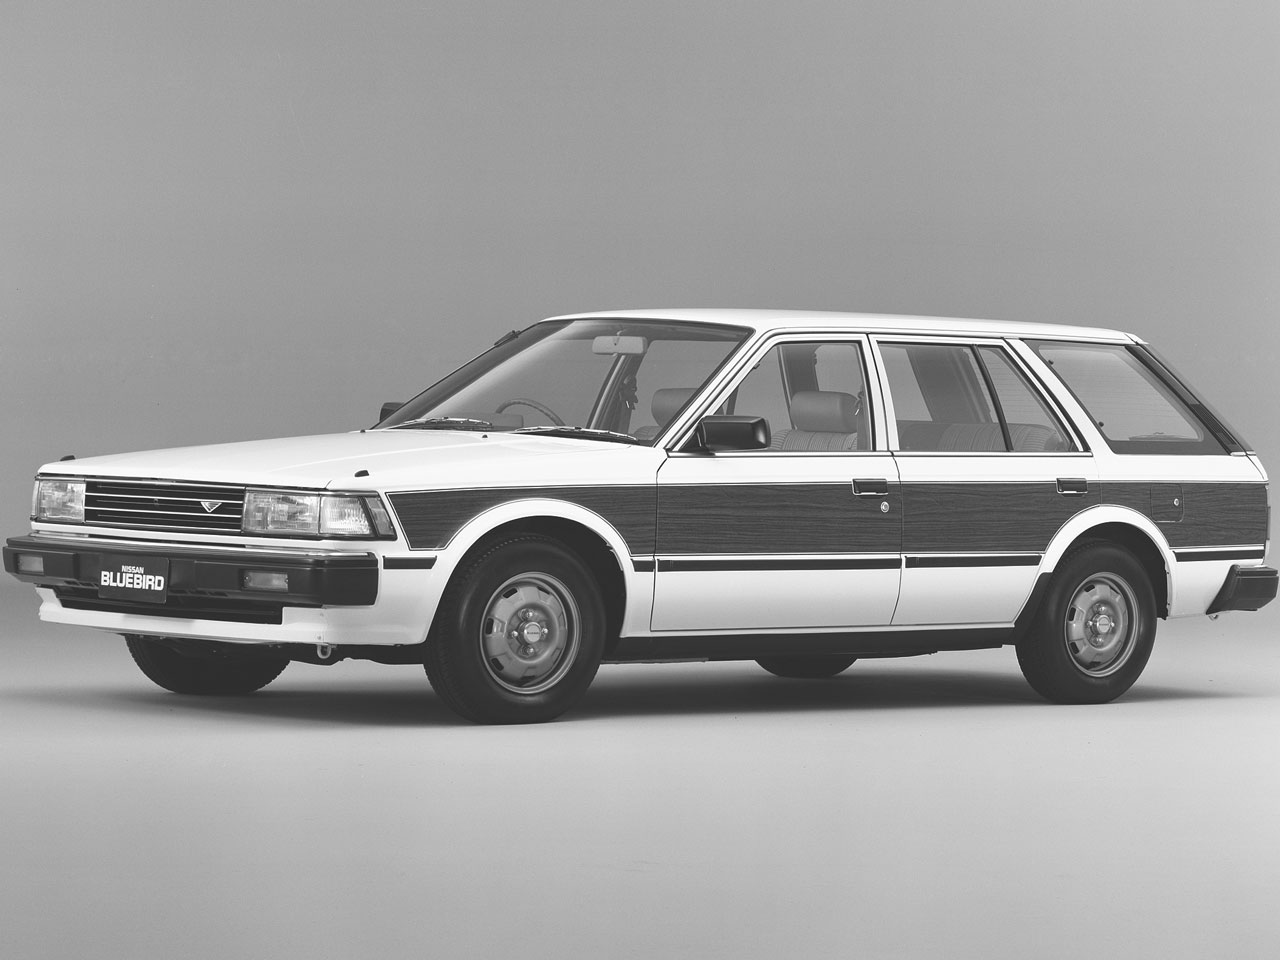 日産 ブルーバード ワゴン 19年モデル 価格 グレード一覧 価格 Com